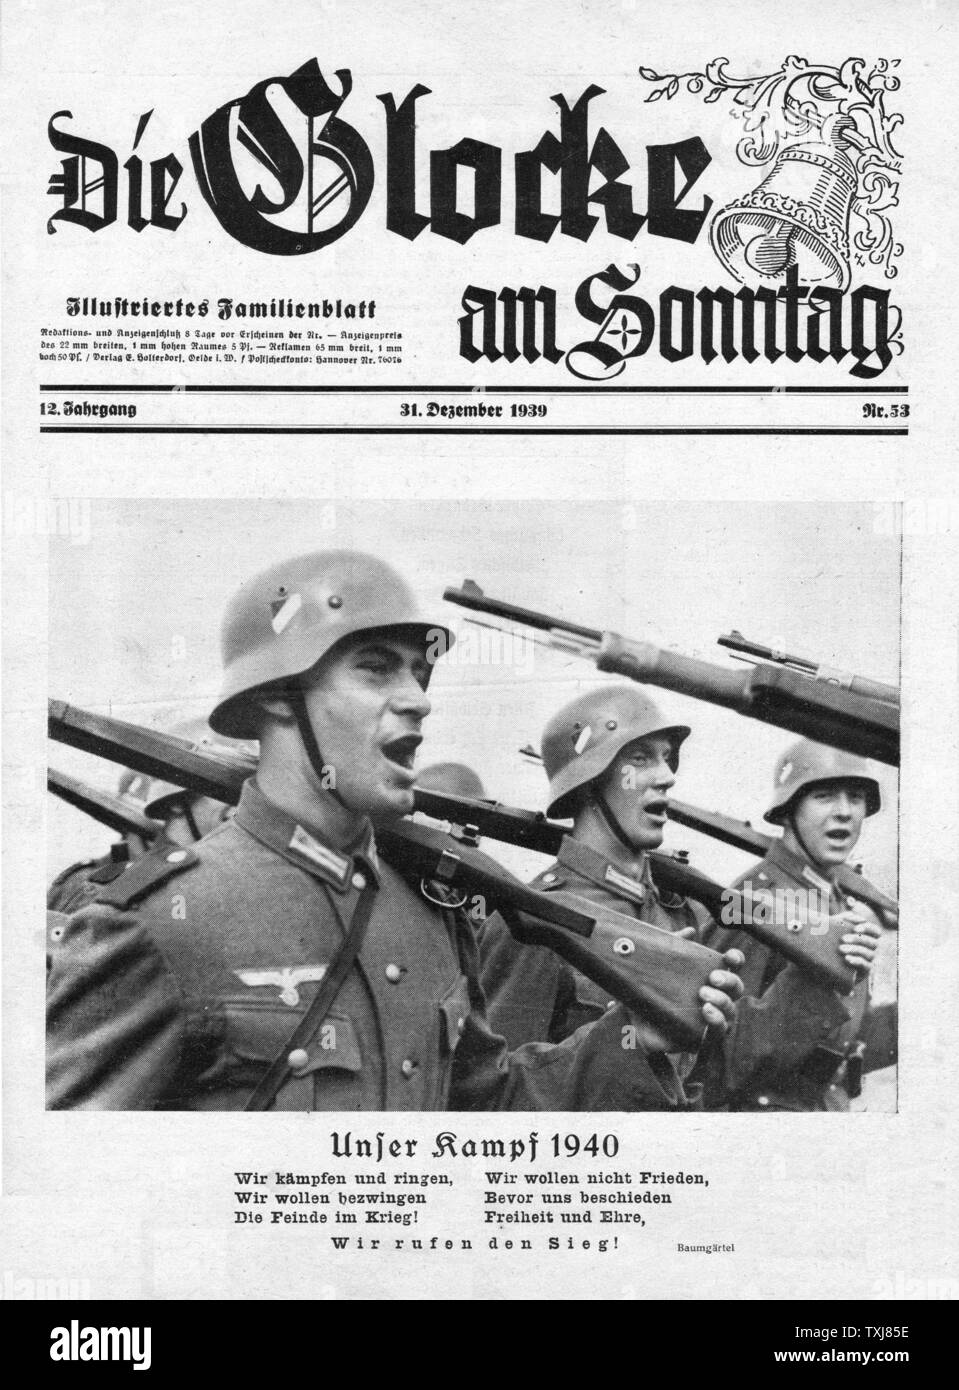 1939 Die Glocke am Sonntag German Wehrmacht soldiers Stock Photo